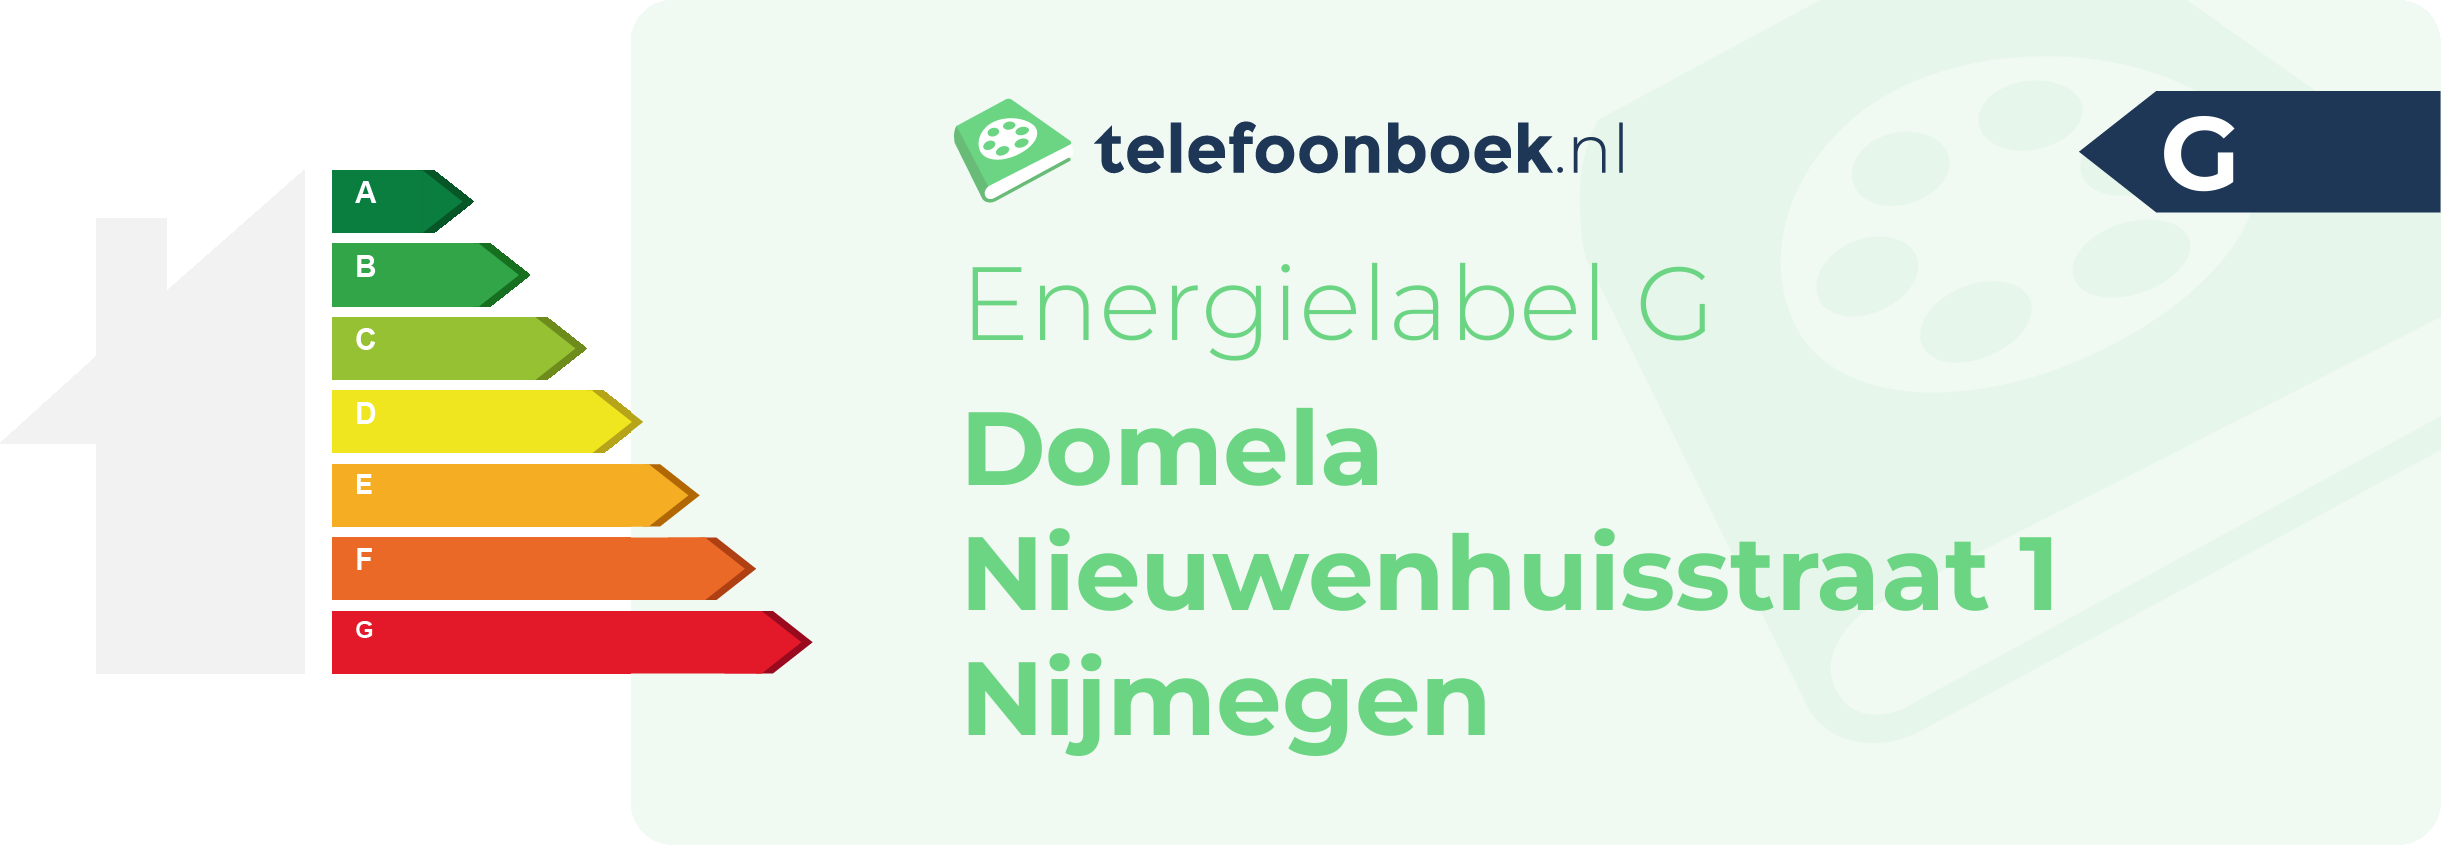 Energielabel Domela Nieuwenhuisstraat 1 Nijmegen